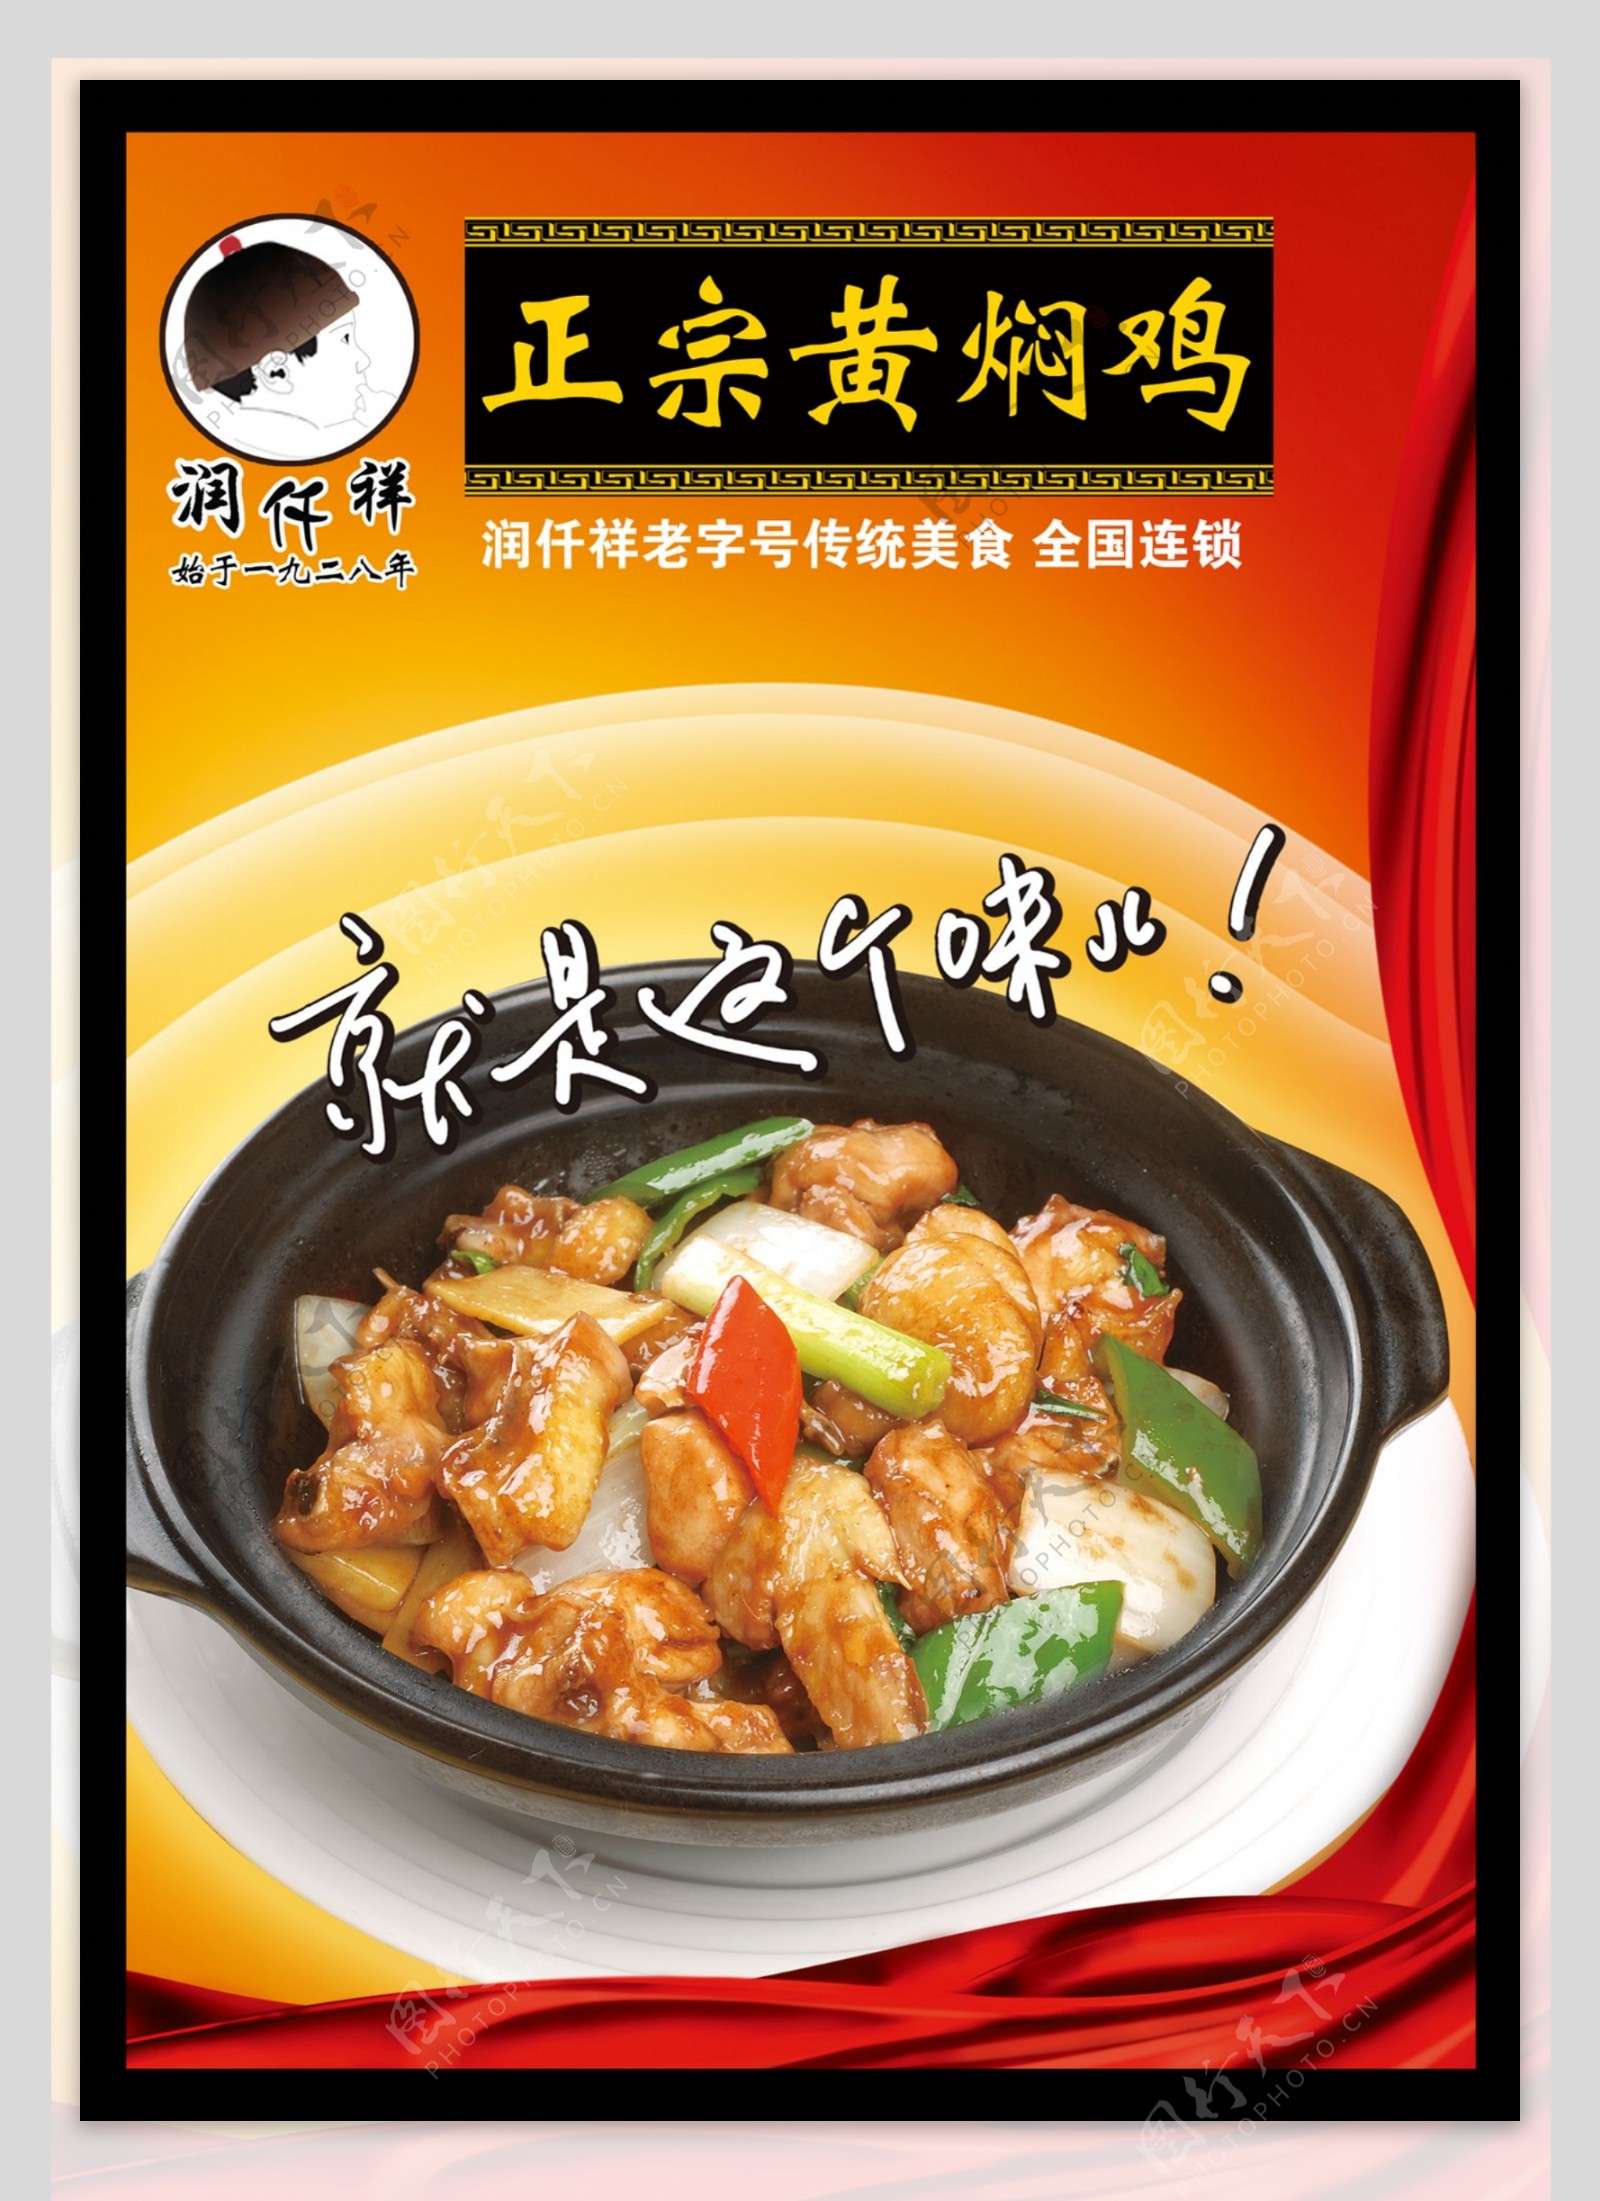 润仟祥黄焖鸡米饭宣传海报